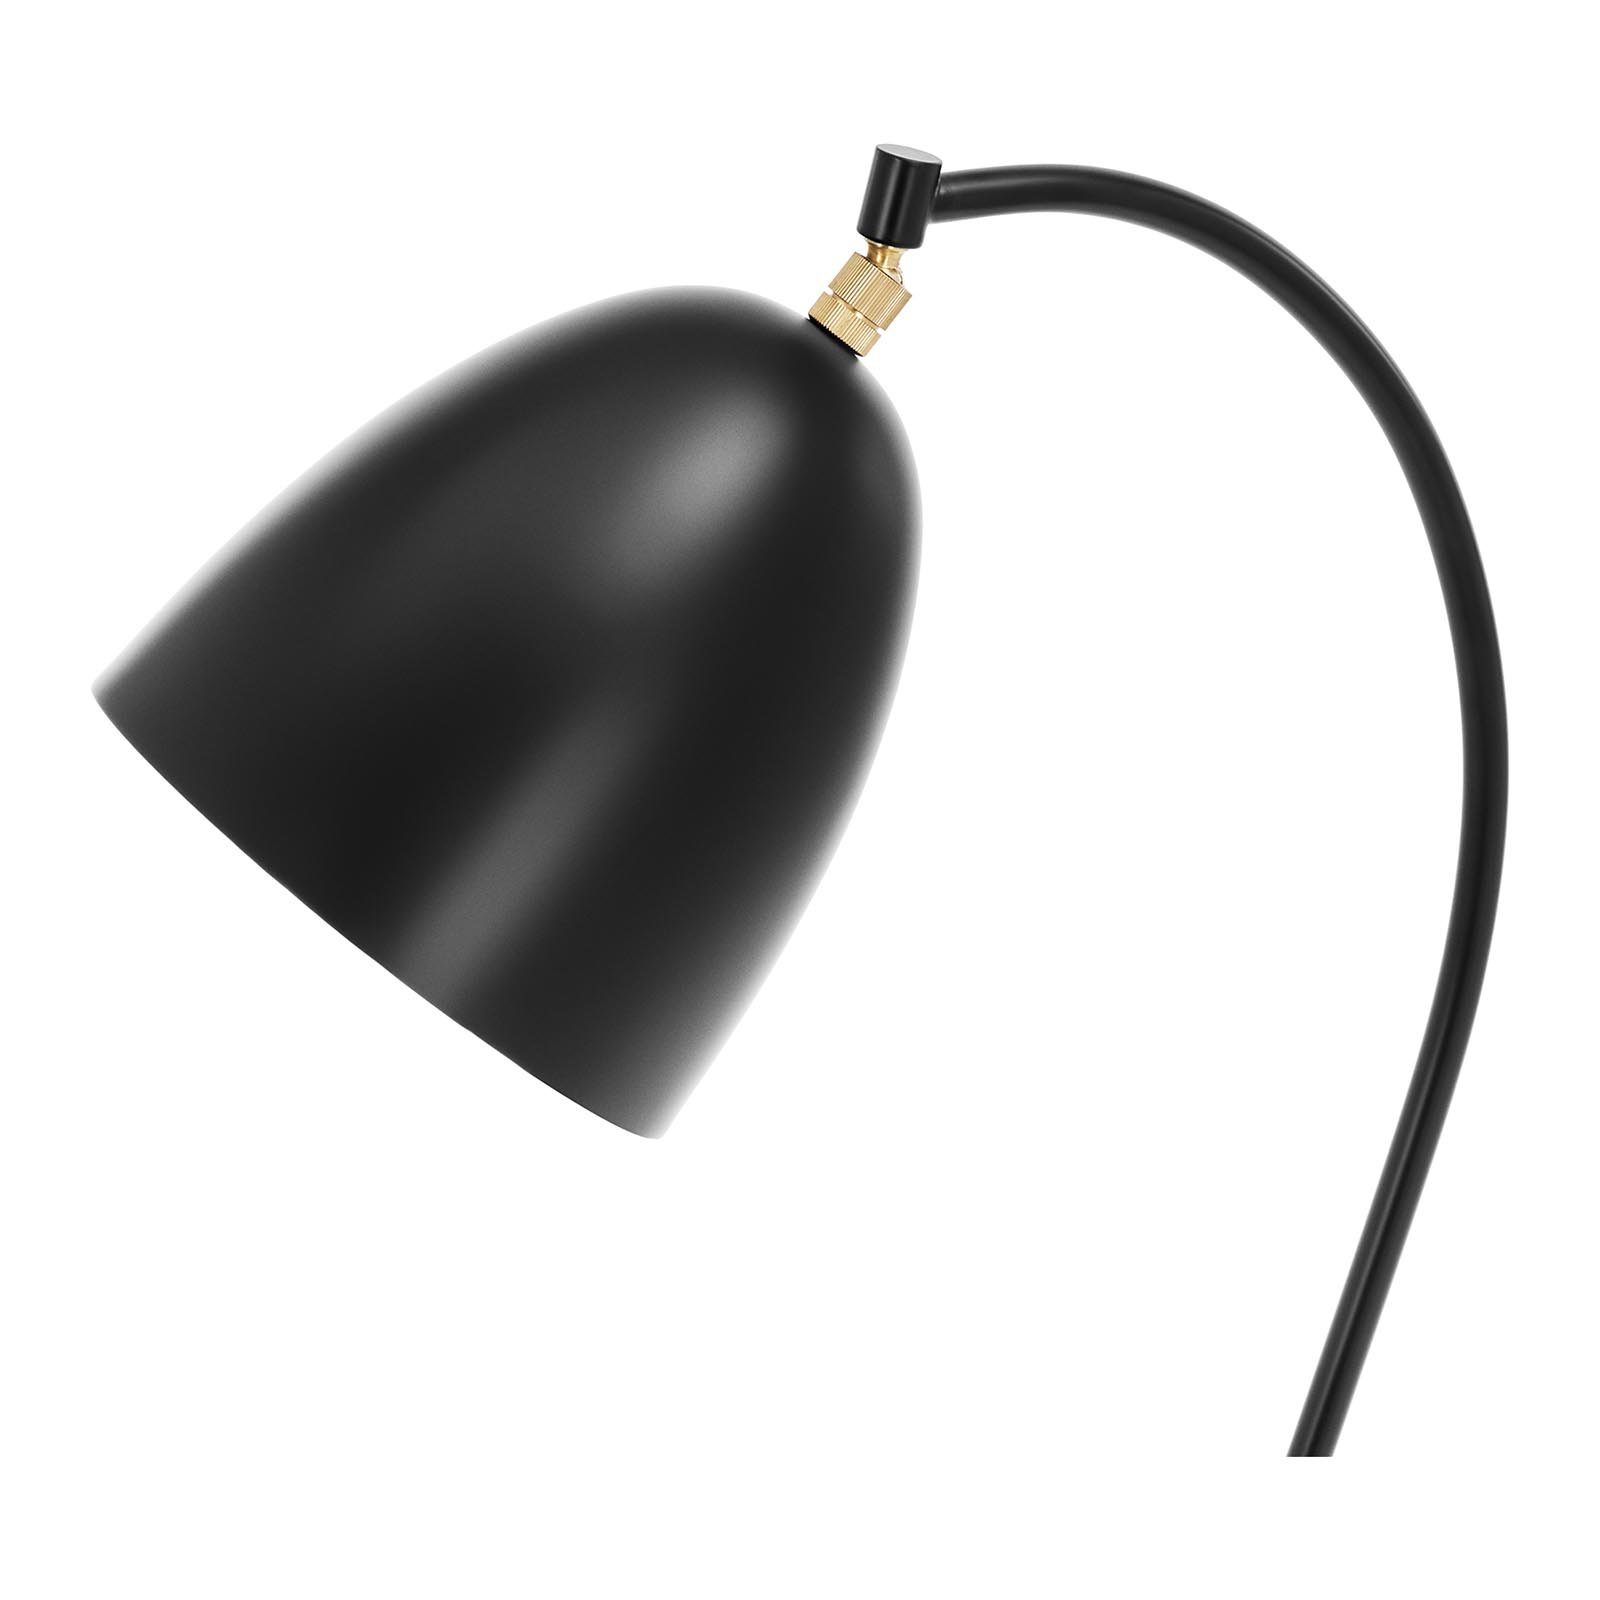 Stehleuchte W Stehlampe Bogenlampe Uniprodo E27 Schirm Stehlampe 40 beweglicher